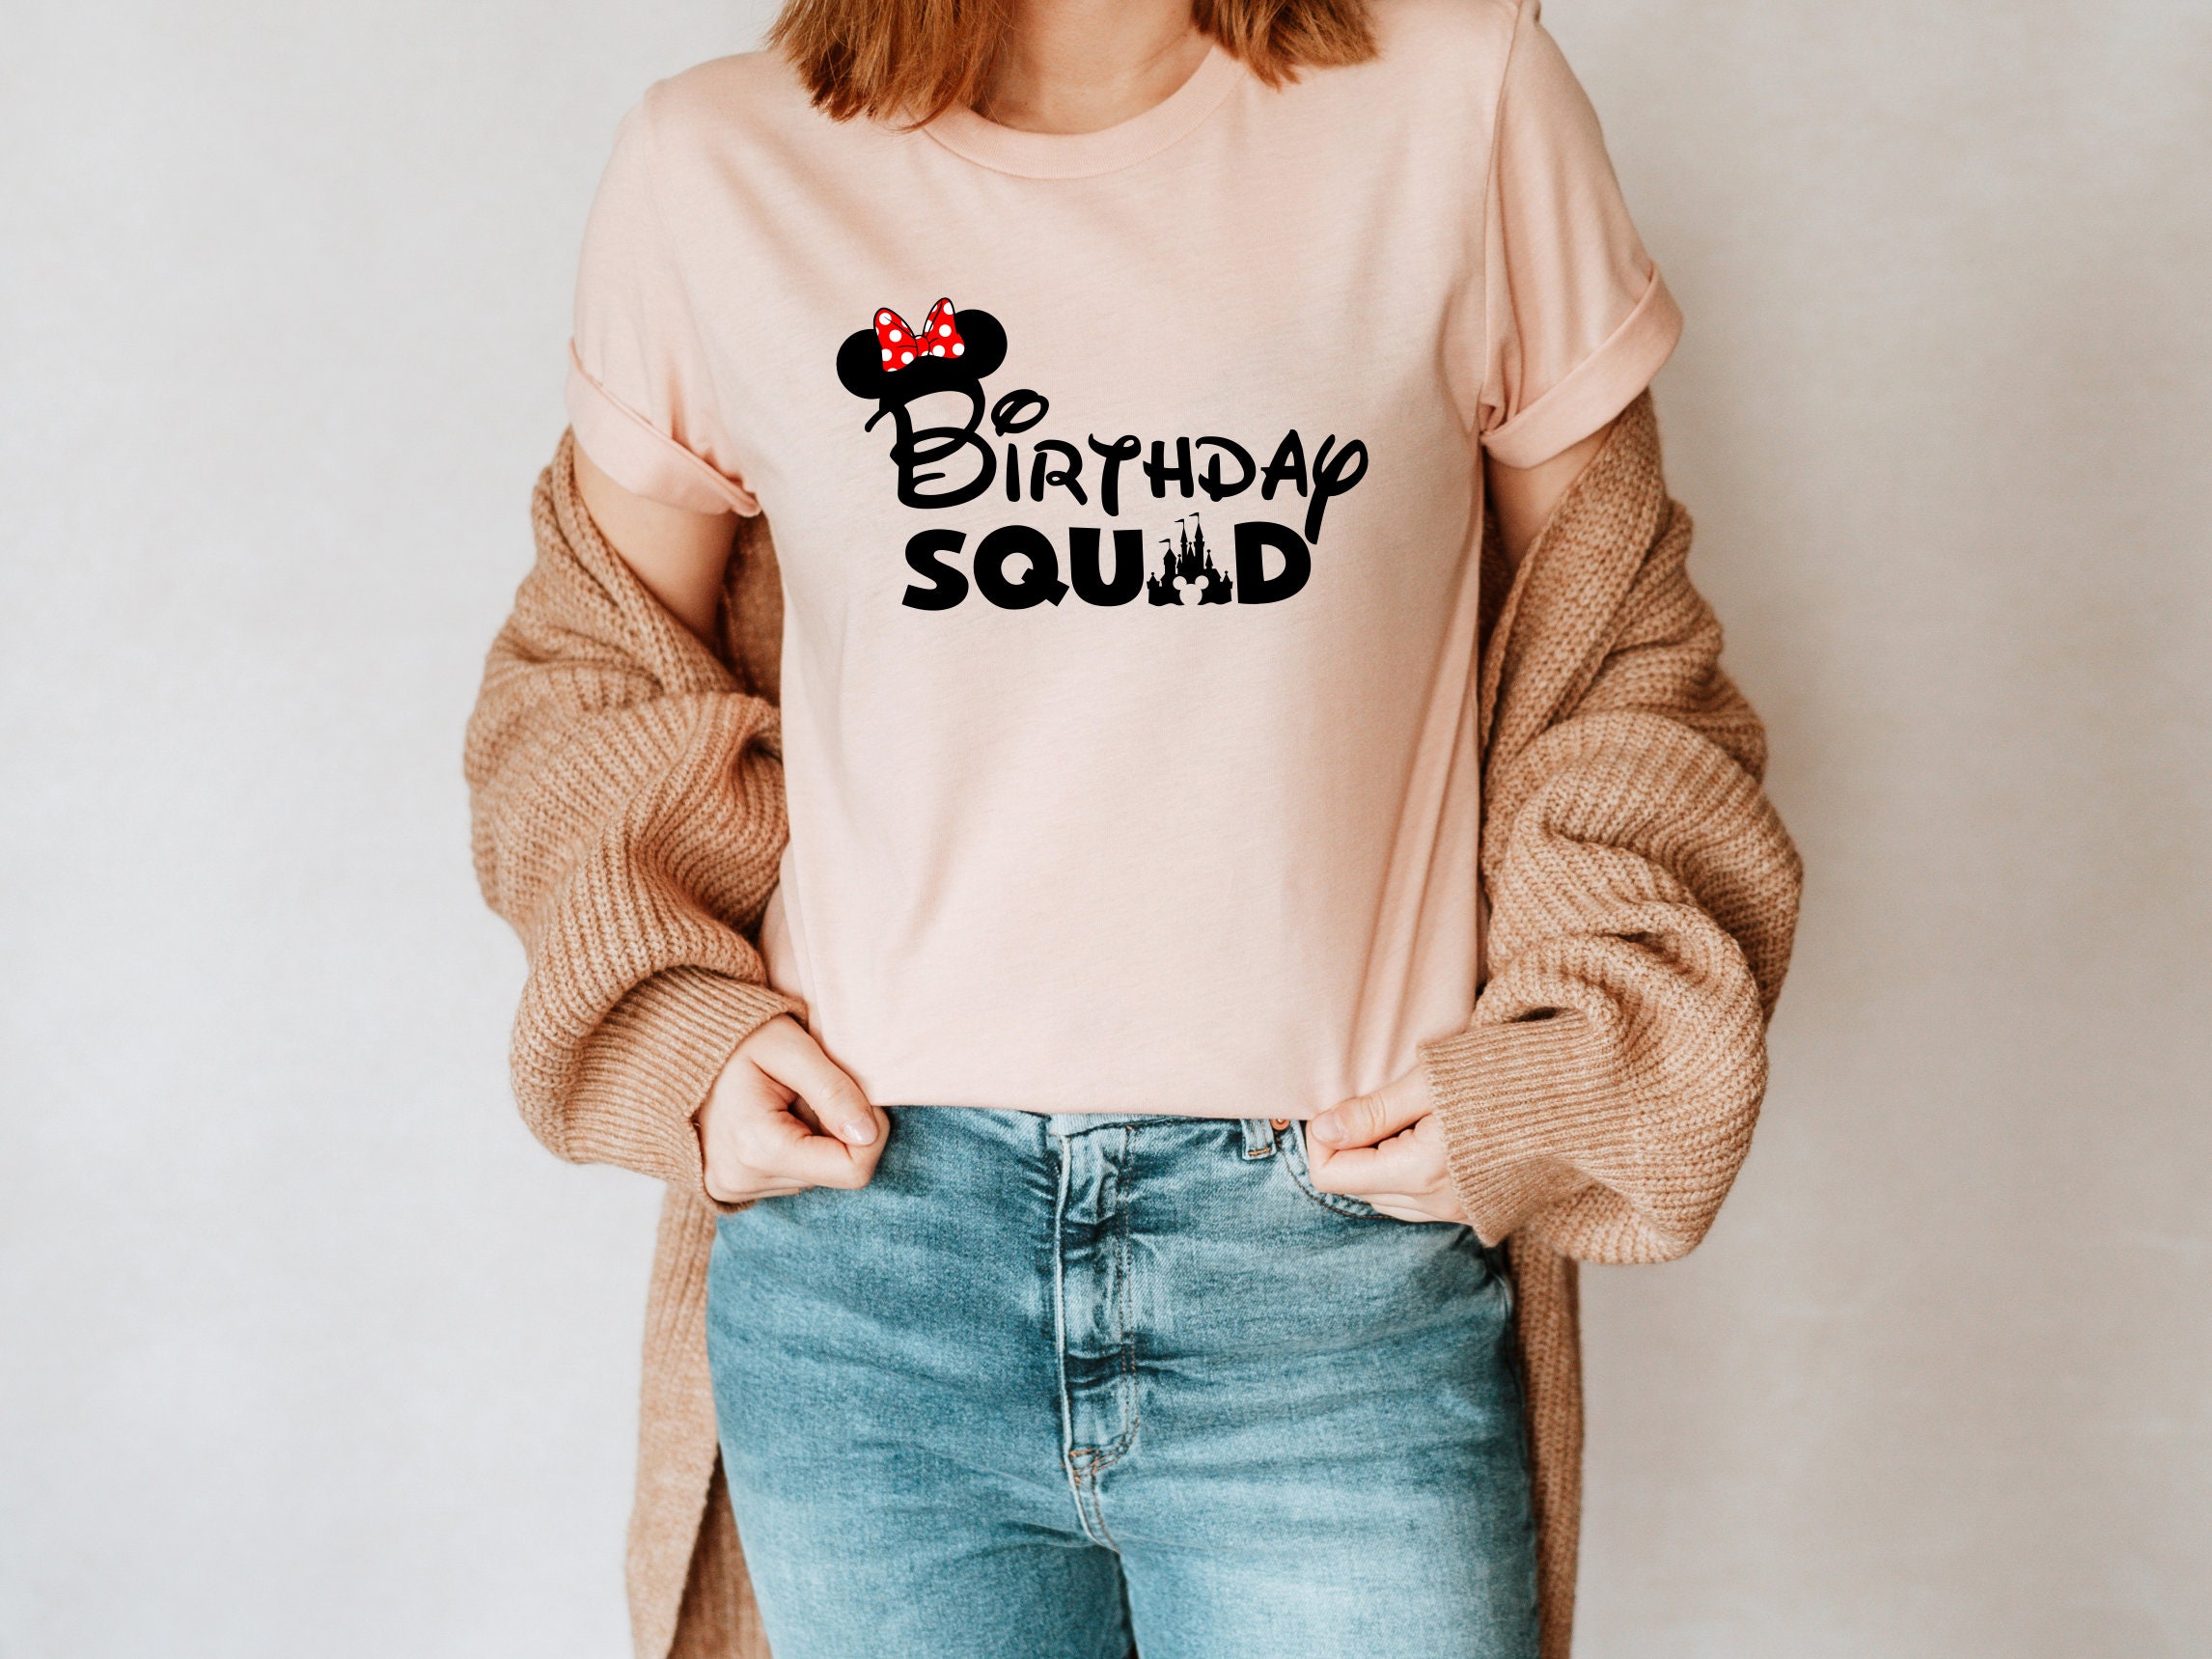 Disney Birthday Girl Shirt, Disney Birthday Party, Best Birthday Ever